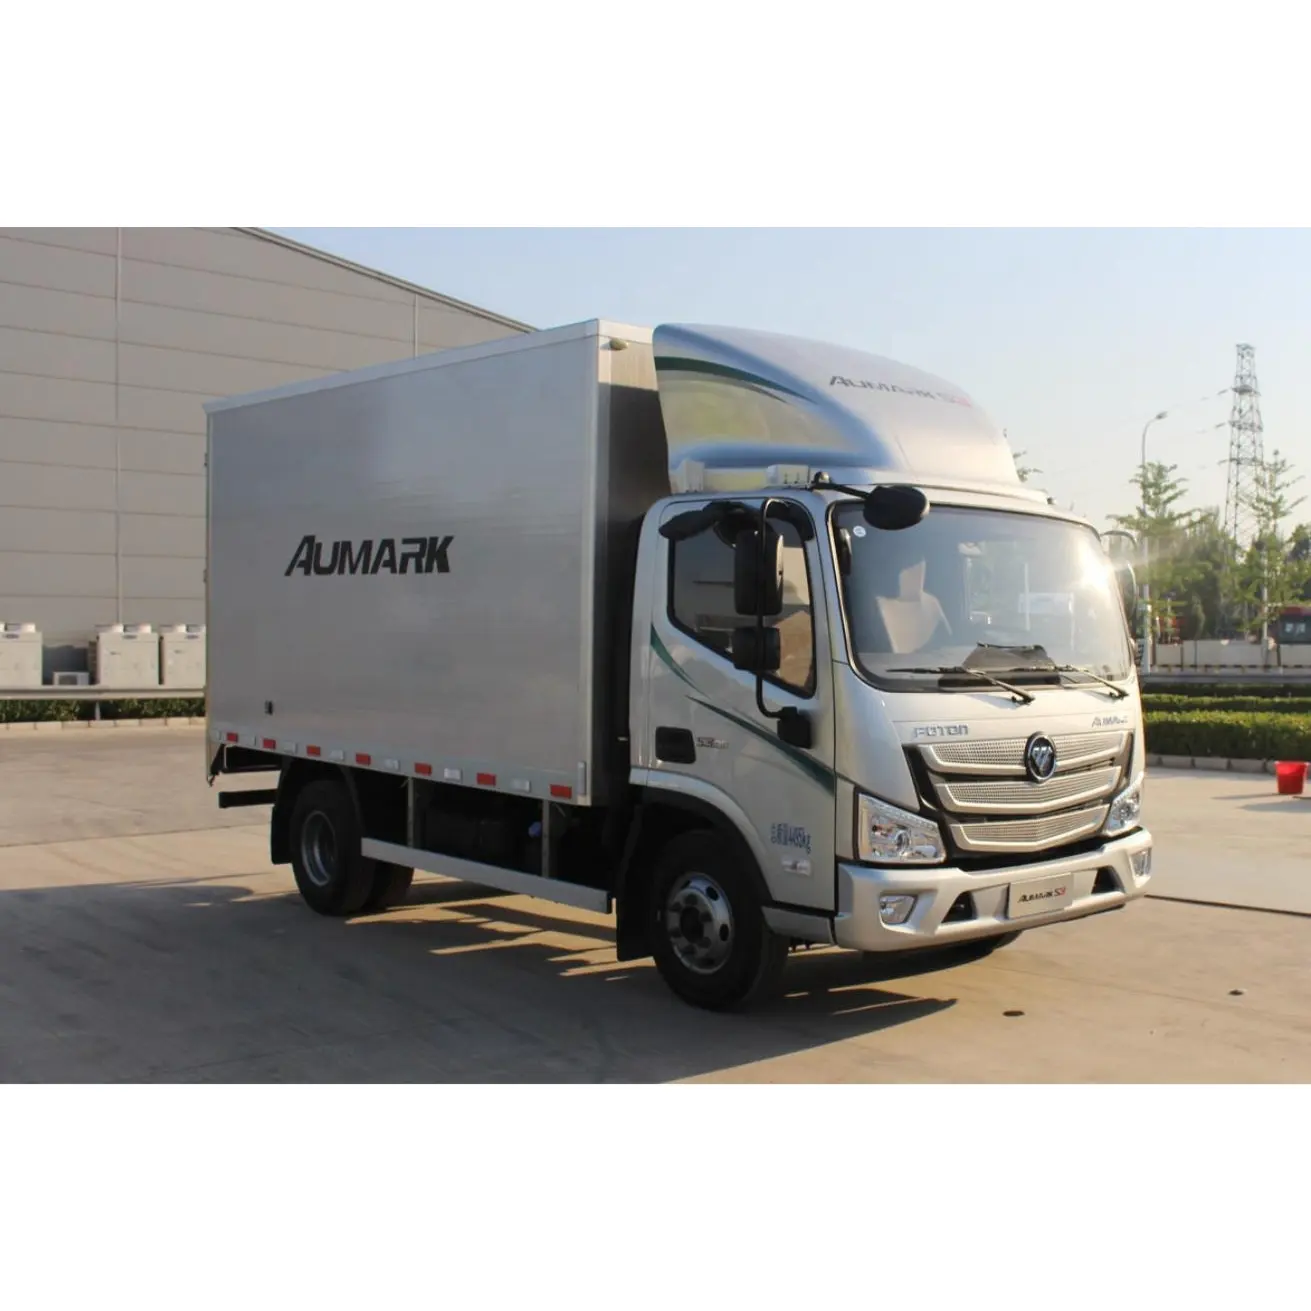 Usato personalizzato 4x2 Foton 10 Ton camion Cargo camion prezzo giappone usato camion da carico per la vendita